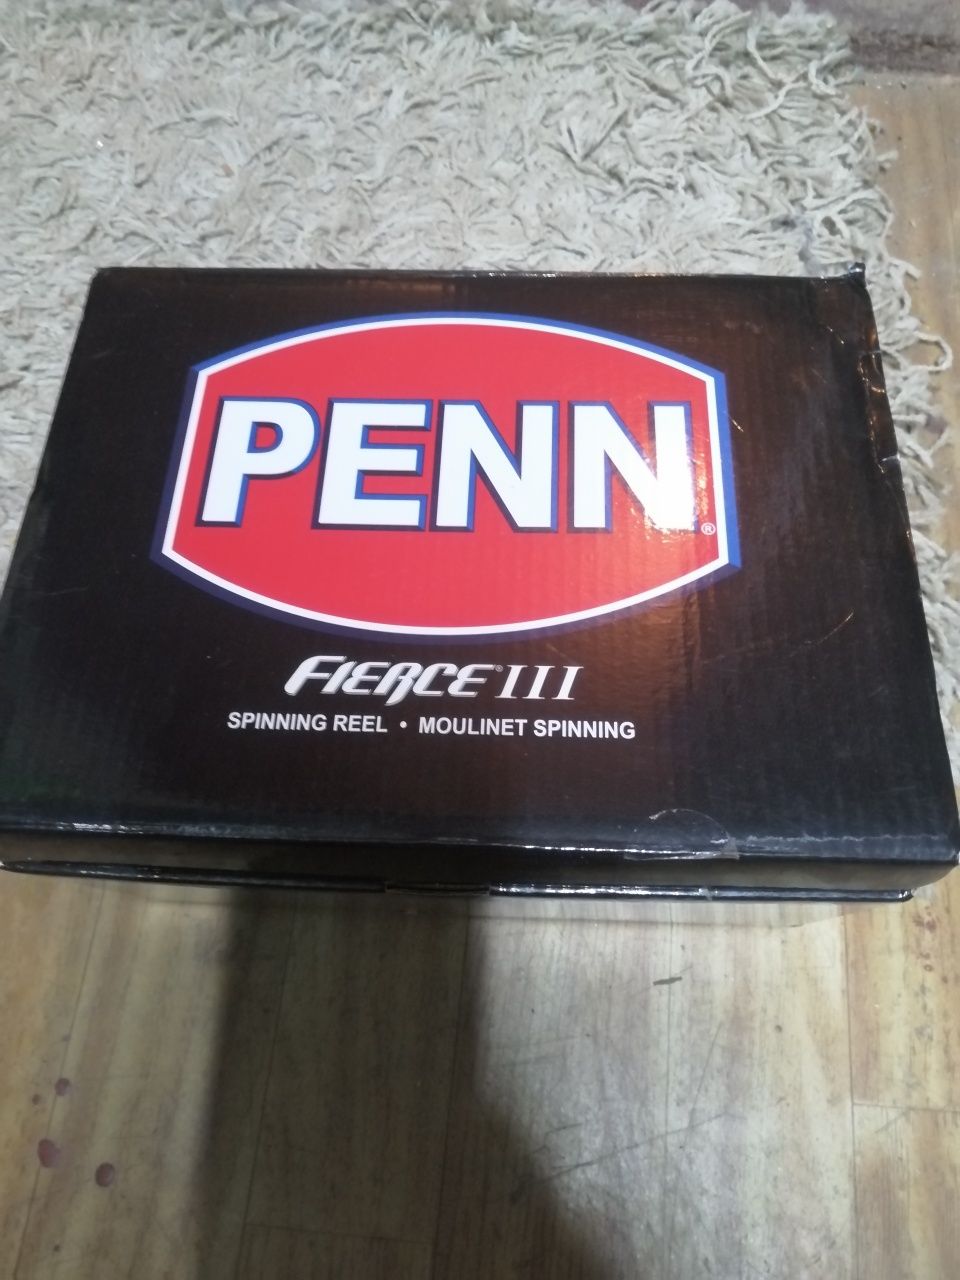 Penn Fierce III 8000 Live Liner 5.3:1